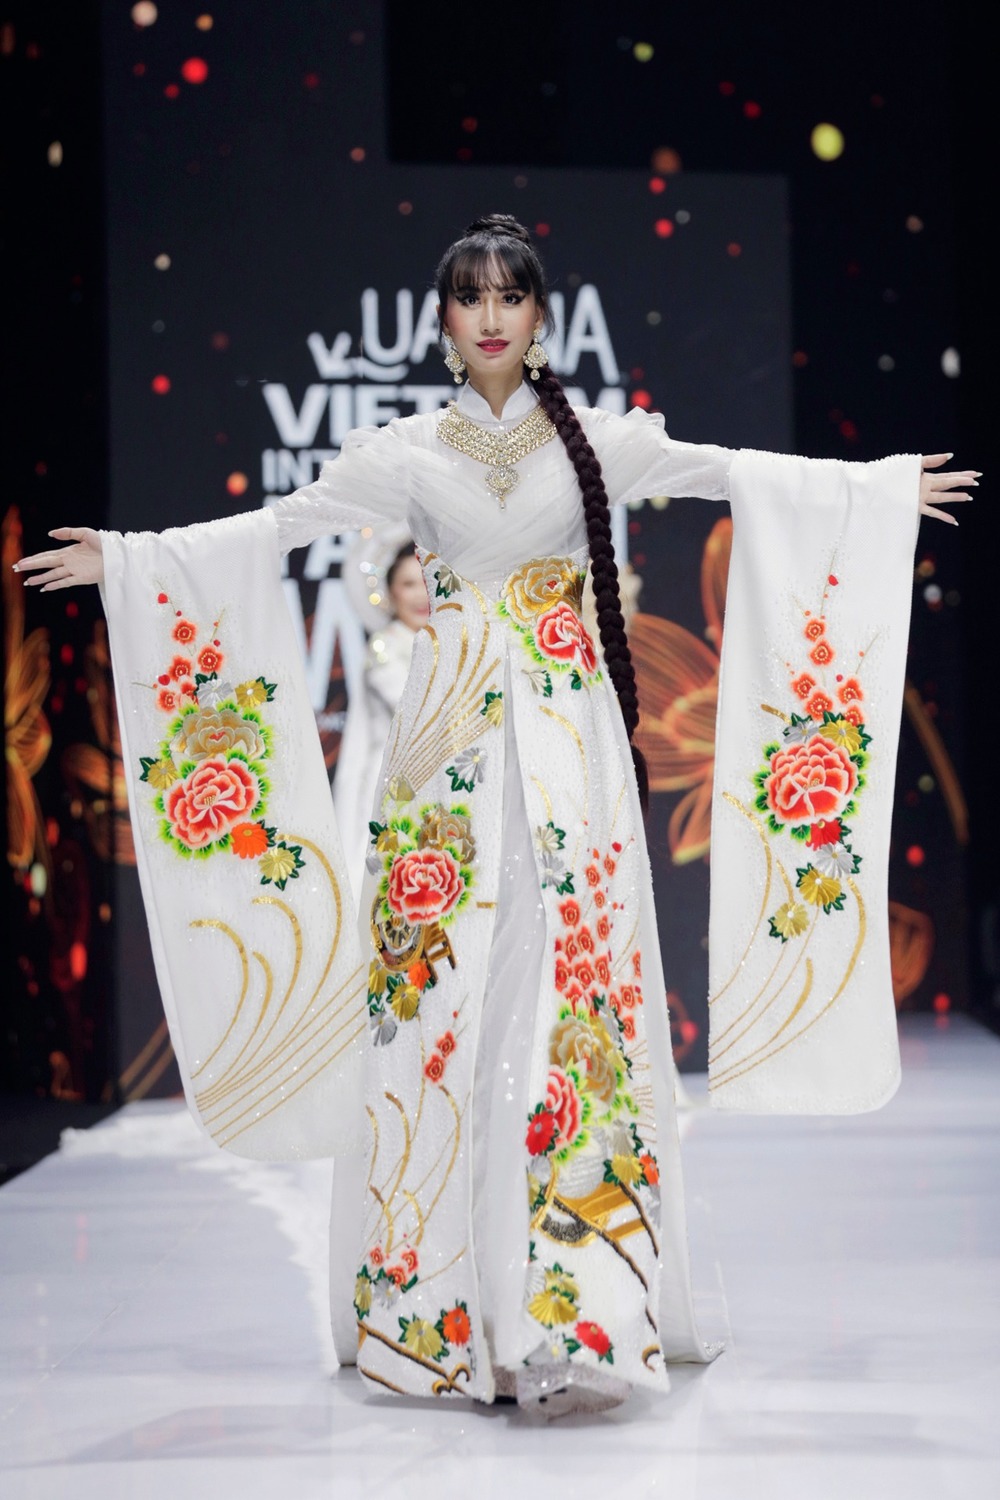  
Lynk Lee trong trang phục Áo dài truyền thống. (Ảnh: Chụp màn hình từ Youtube Vietnam International Fashion Week)